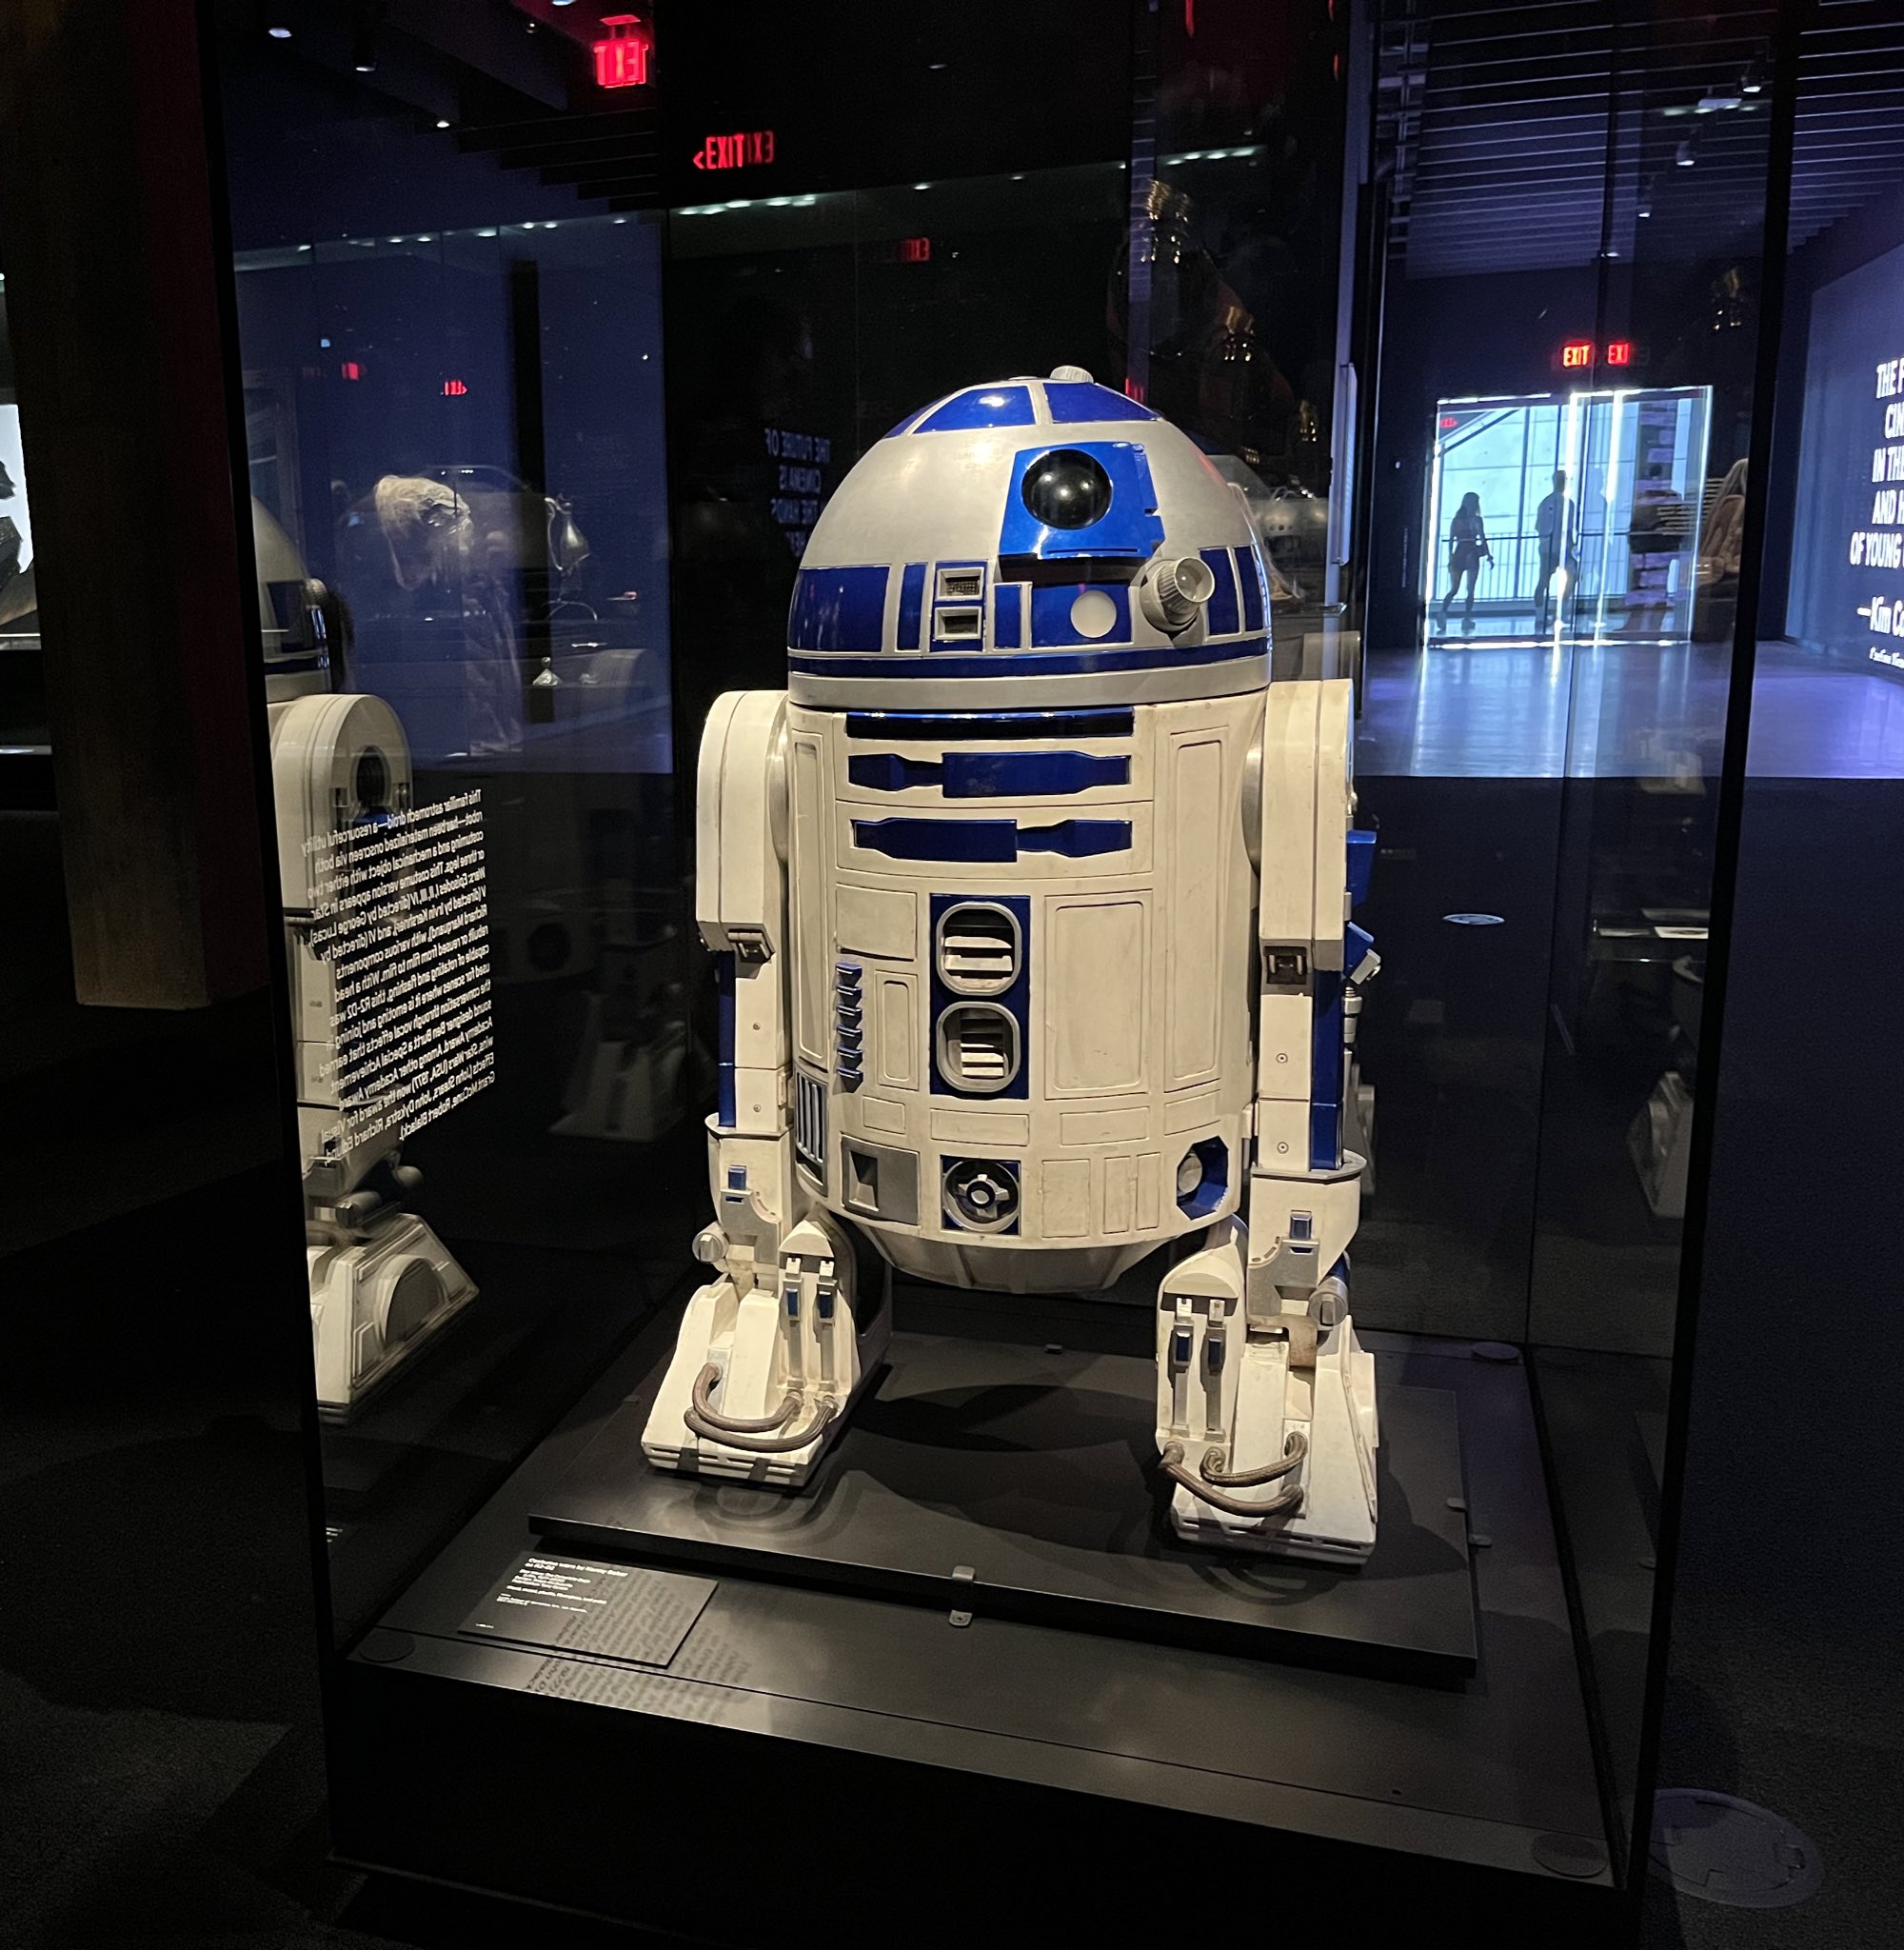 R2-D2 tape measure is cute, but it can't measure parsecs - CNET